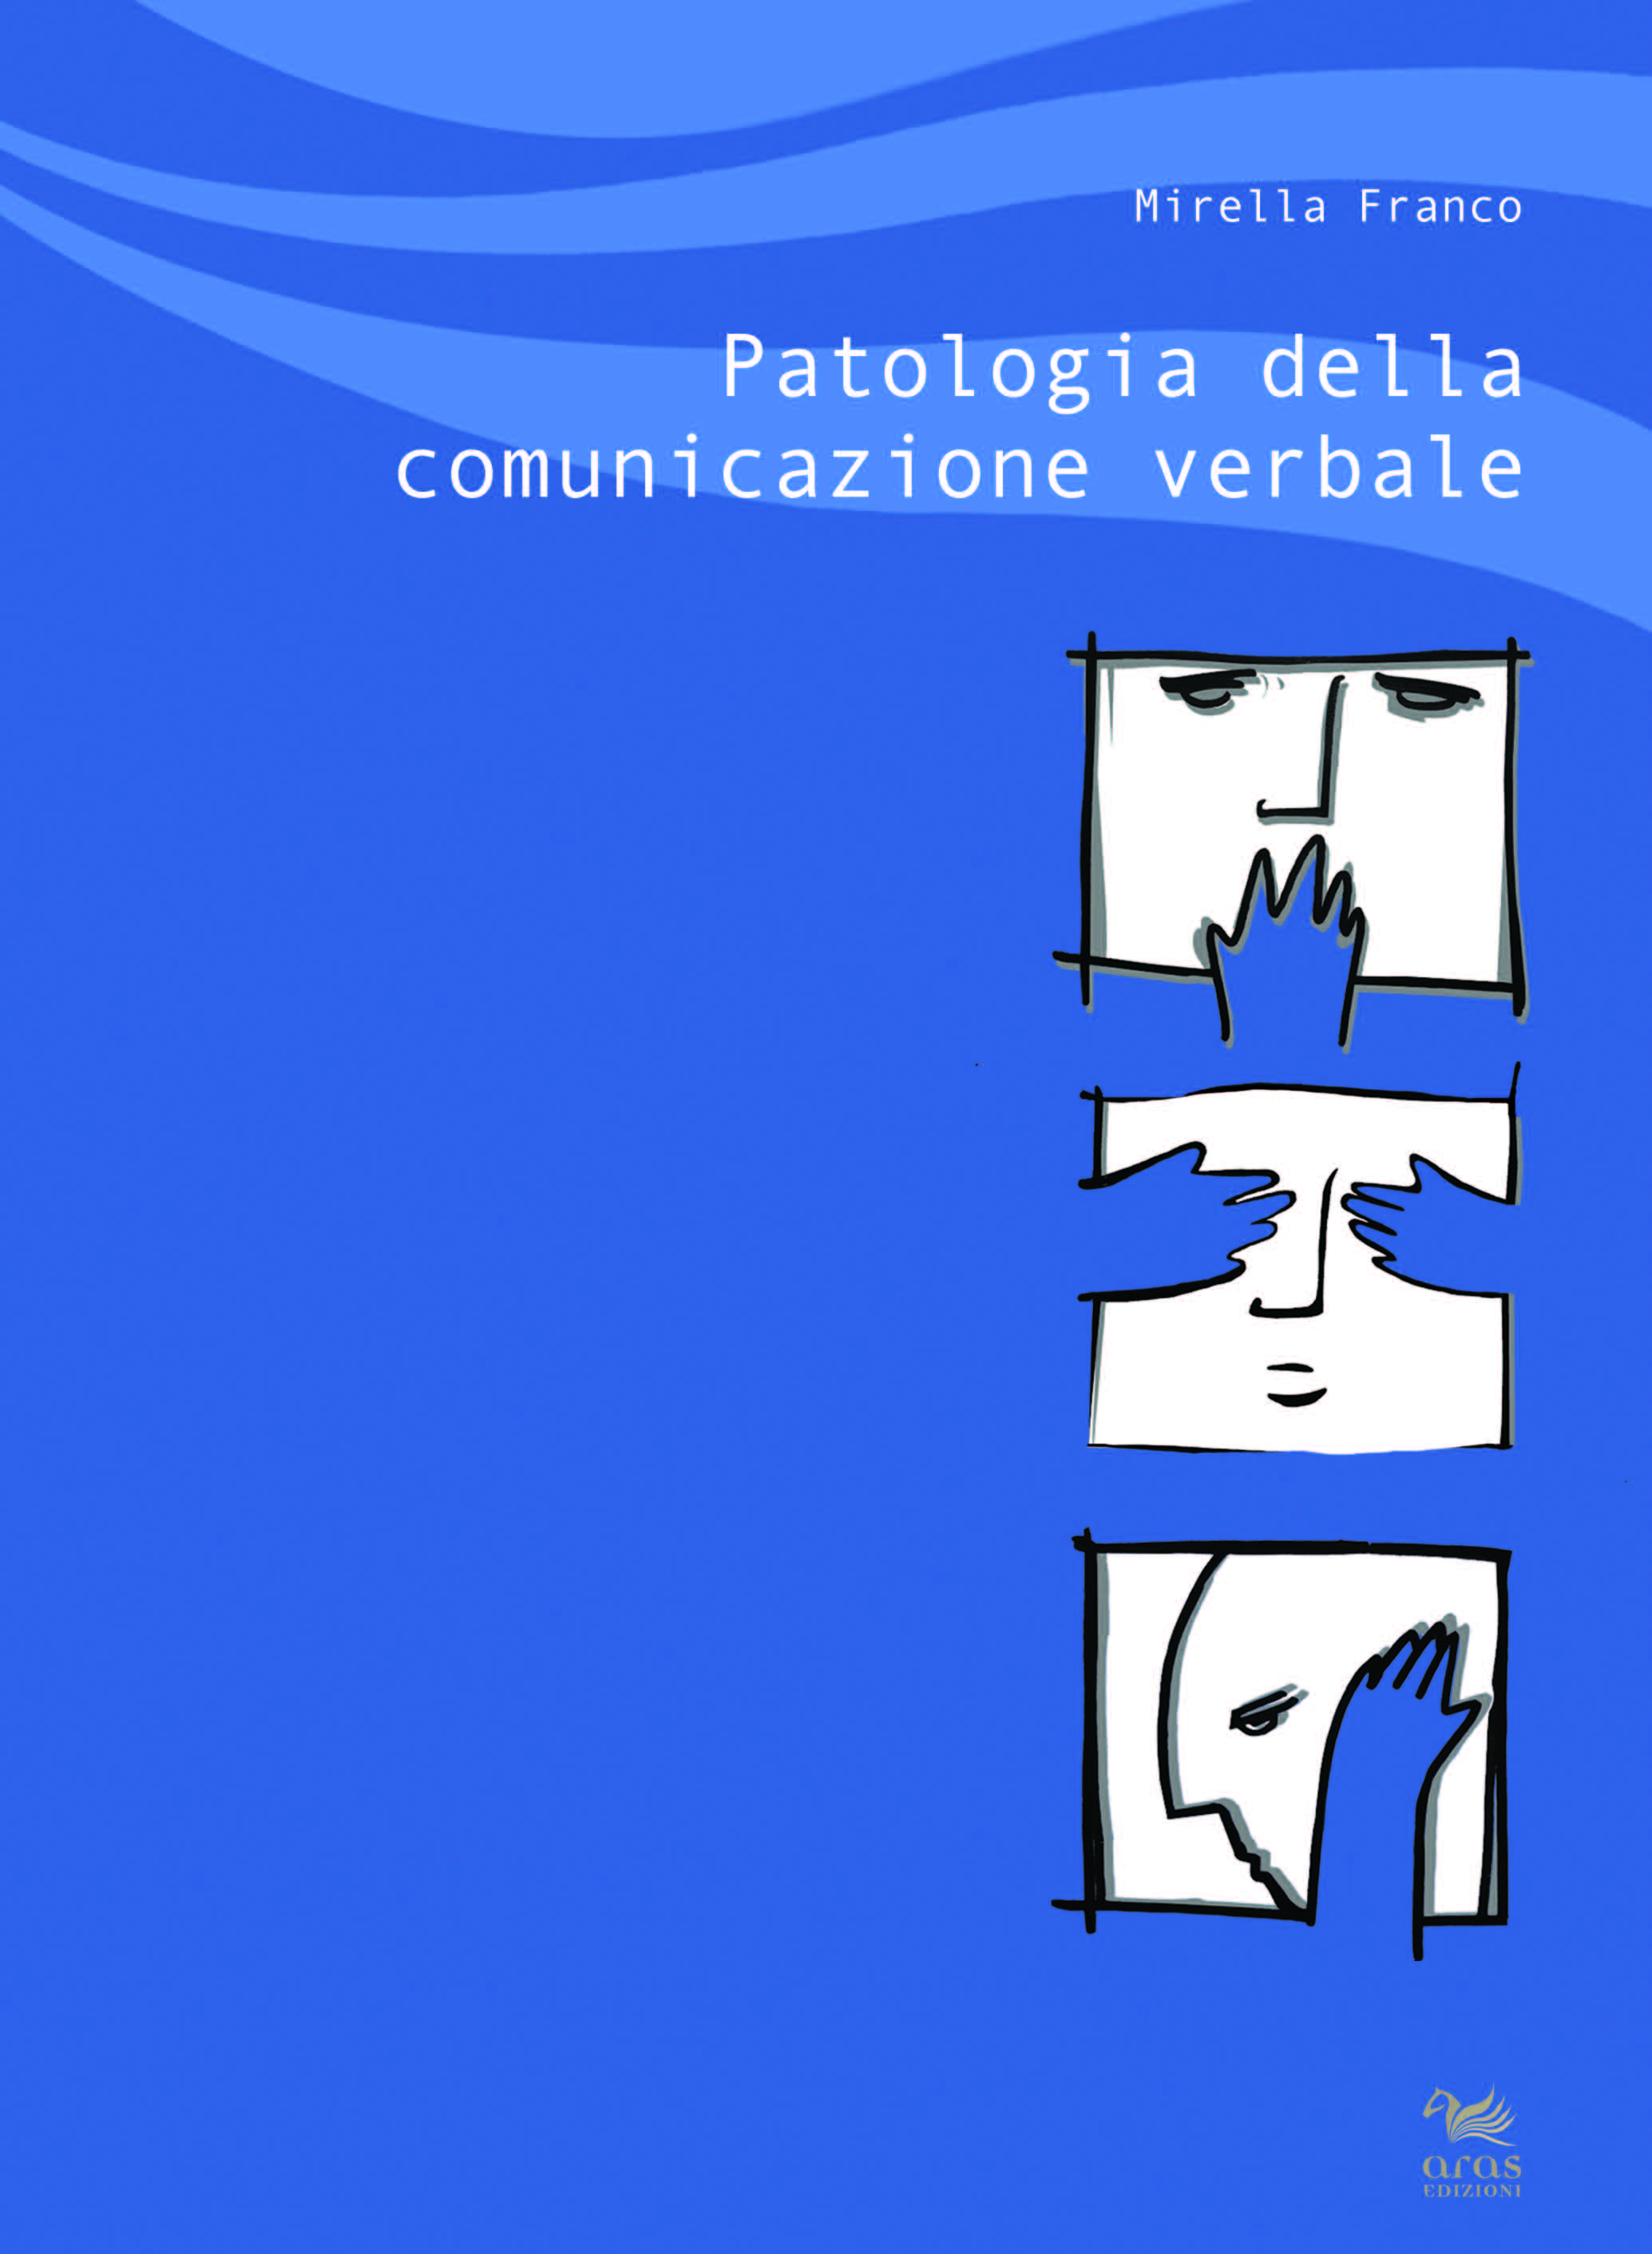 E-book, Patologia della comunicazione verbale, Franco, Mirella, Aras